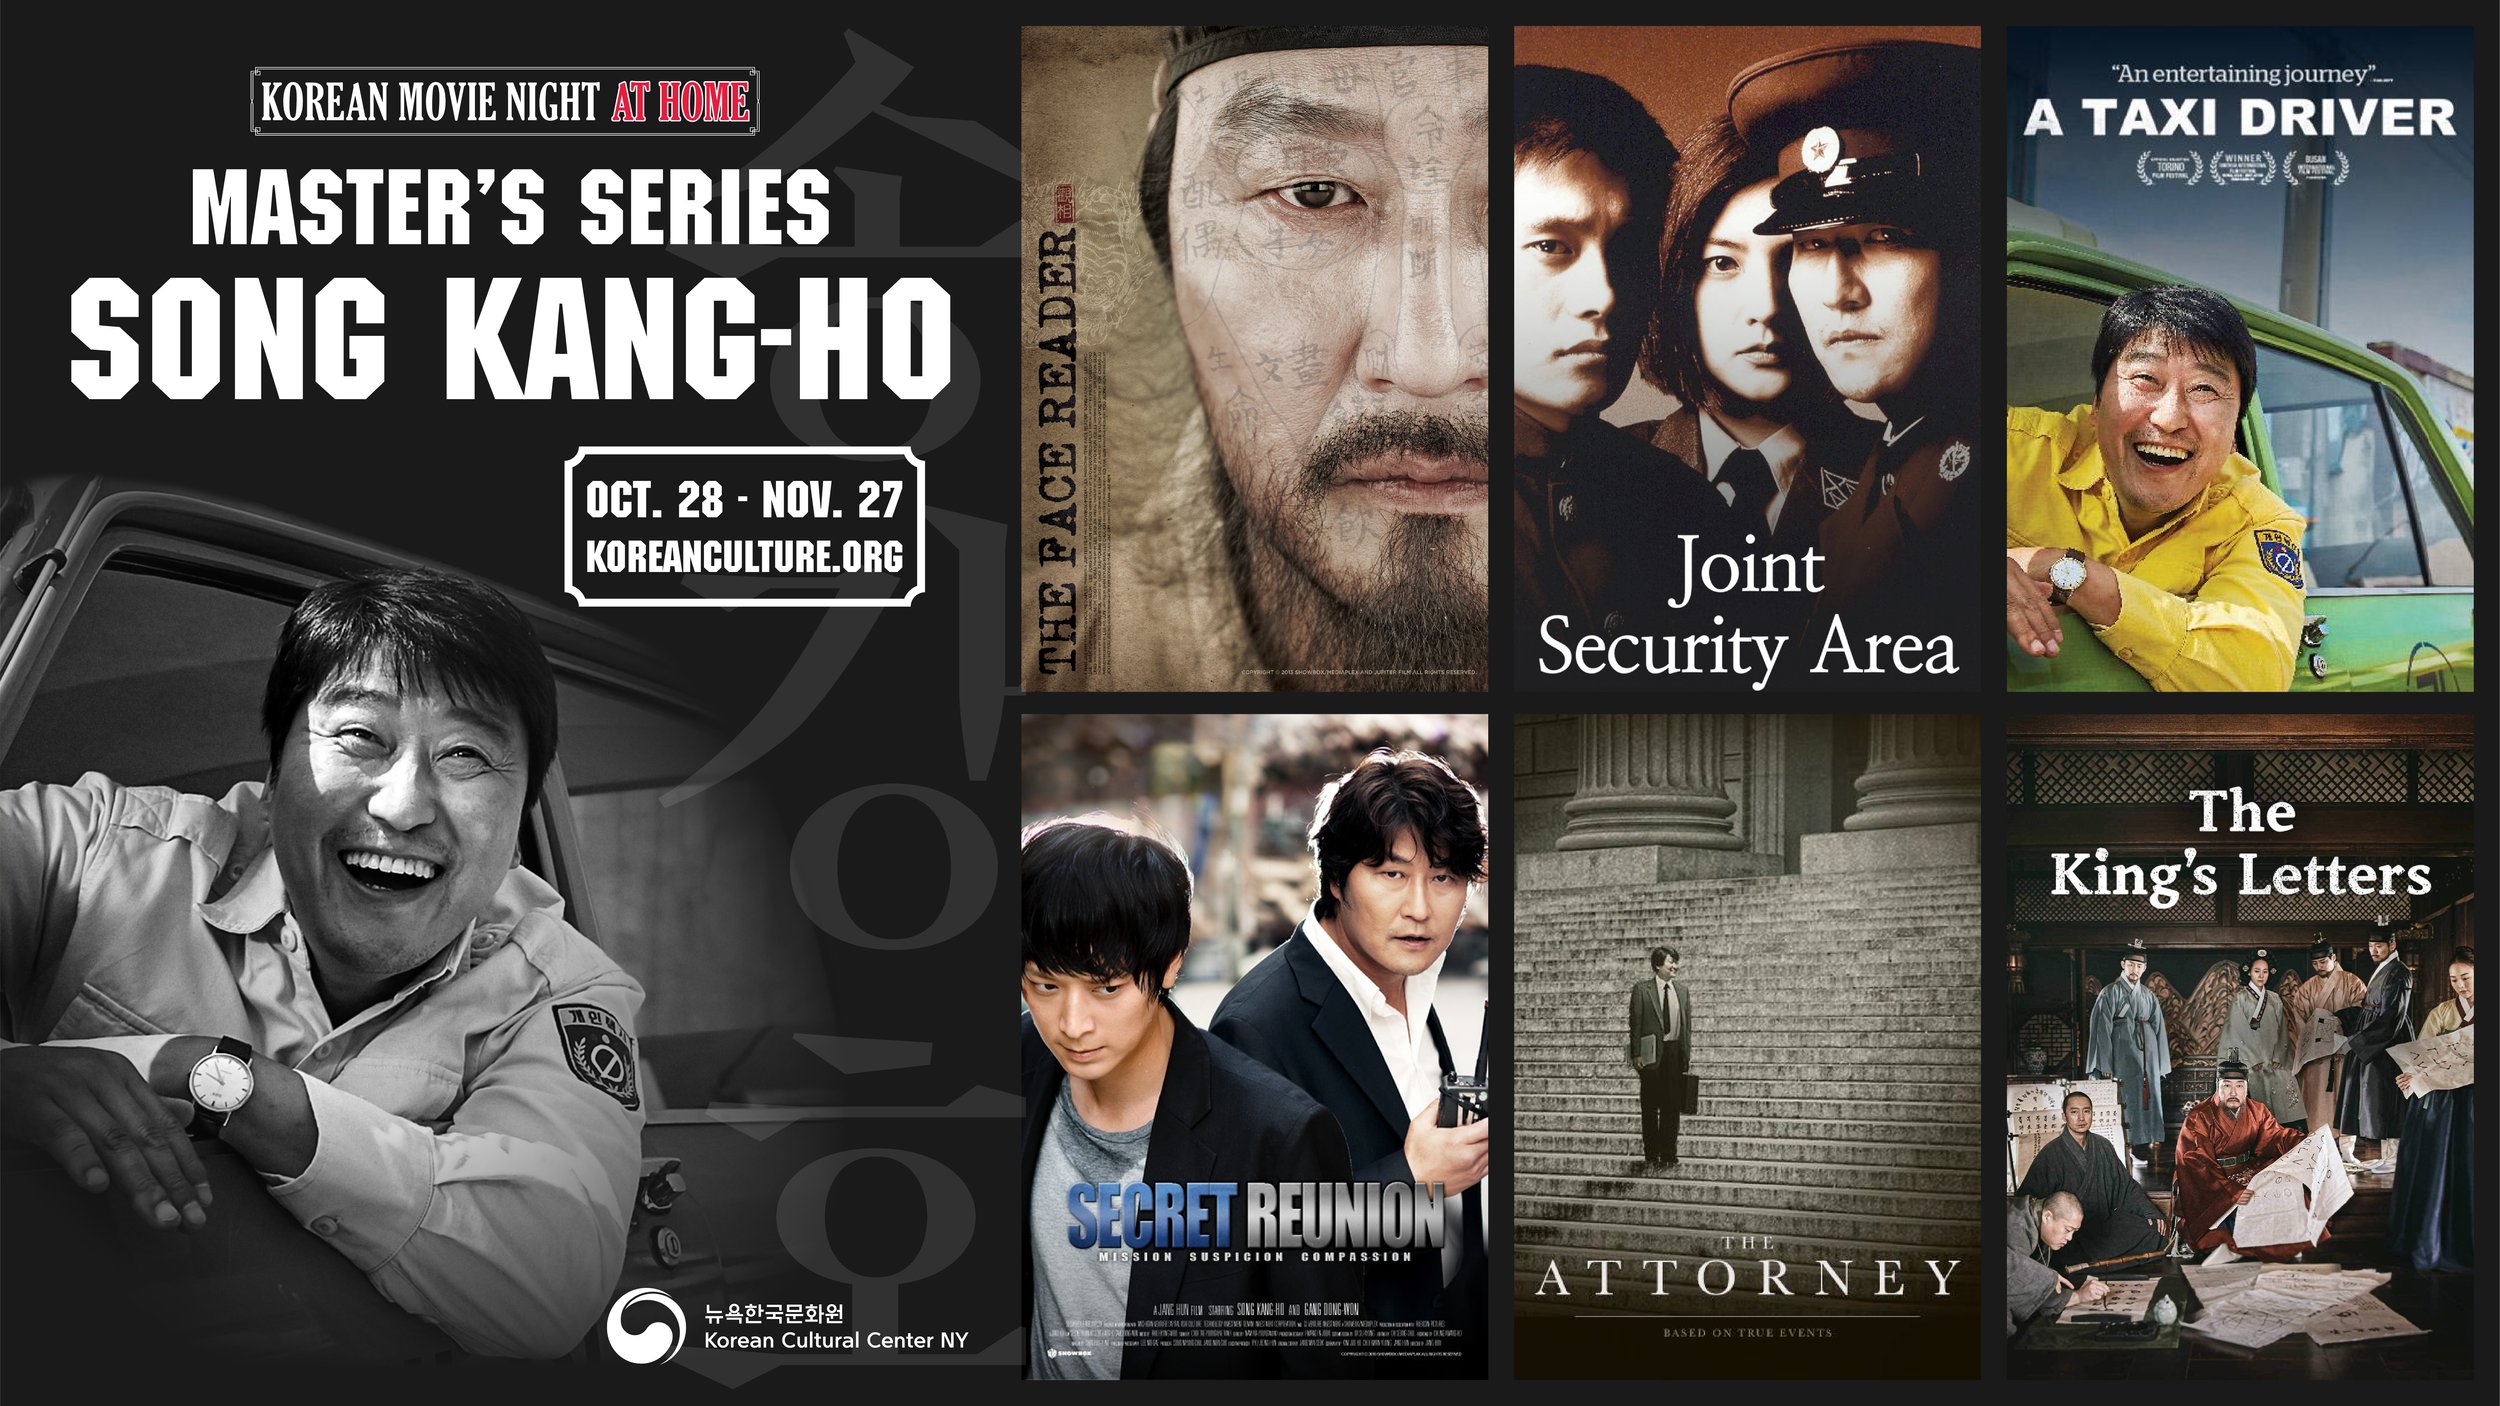 Masters Series Actor Song Kang-ho — Korean Cultural Center New York